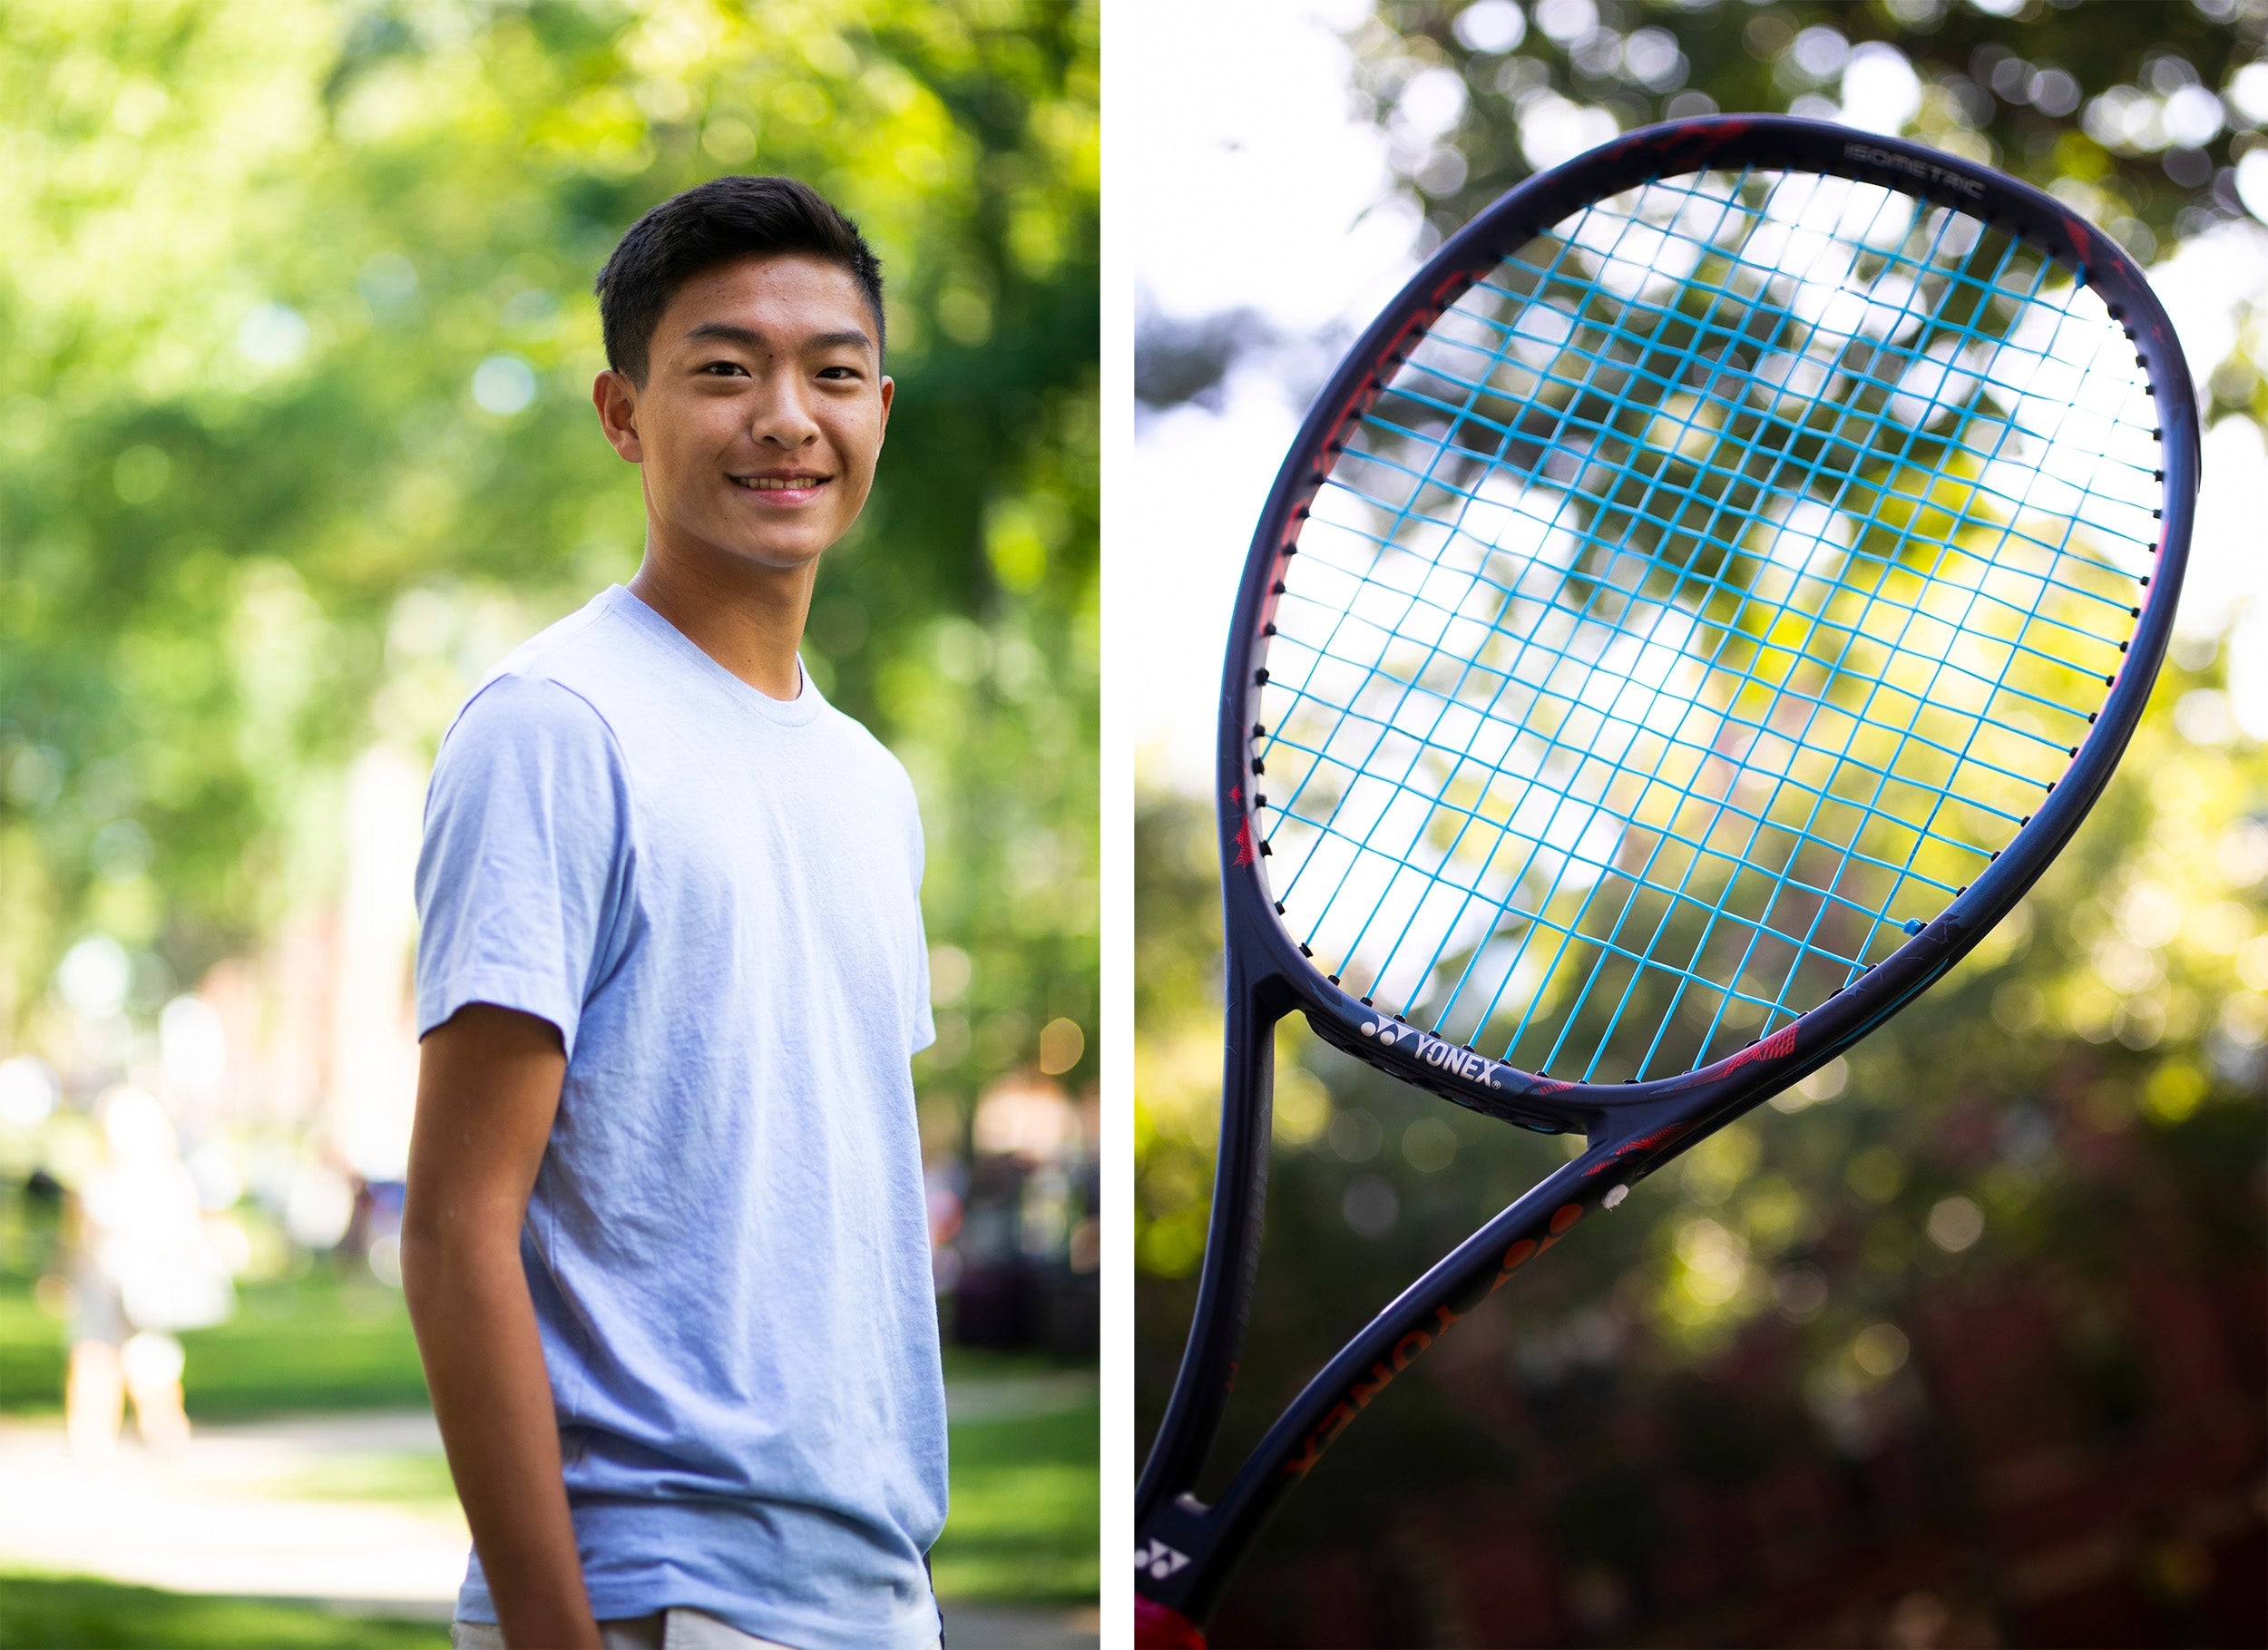 Alan Yim and a tennis racket